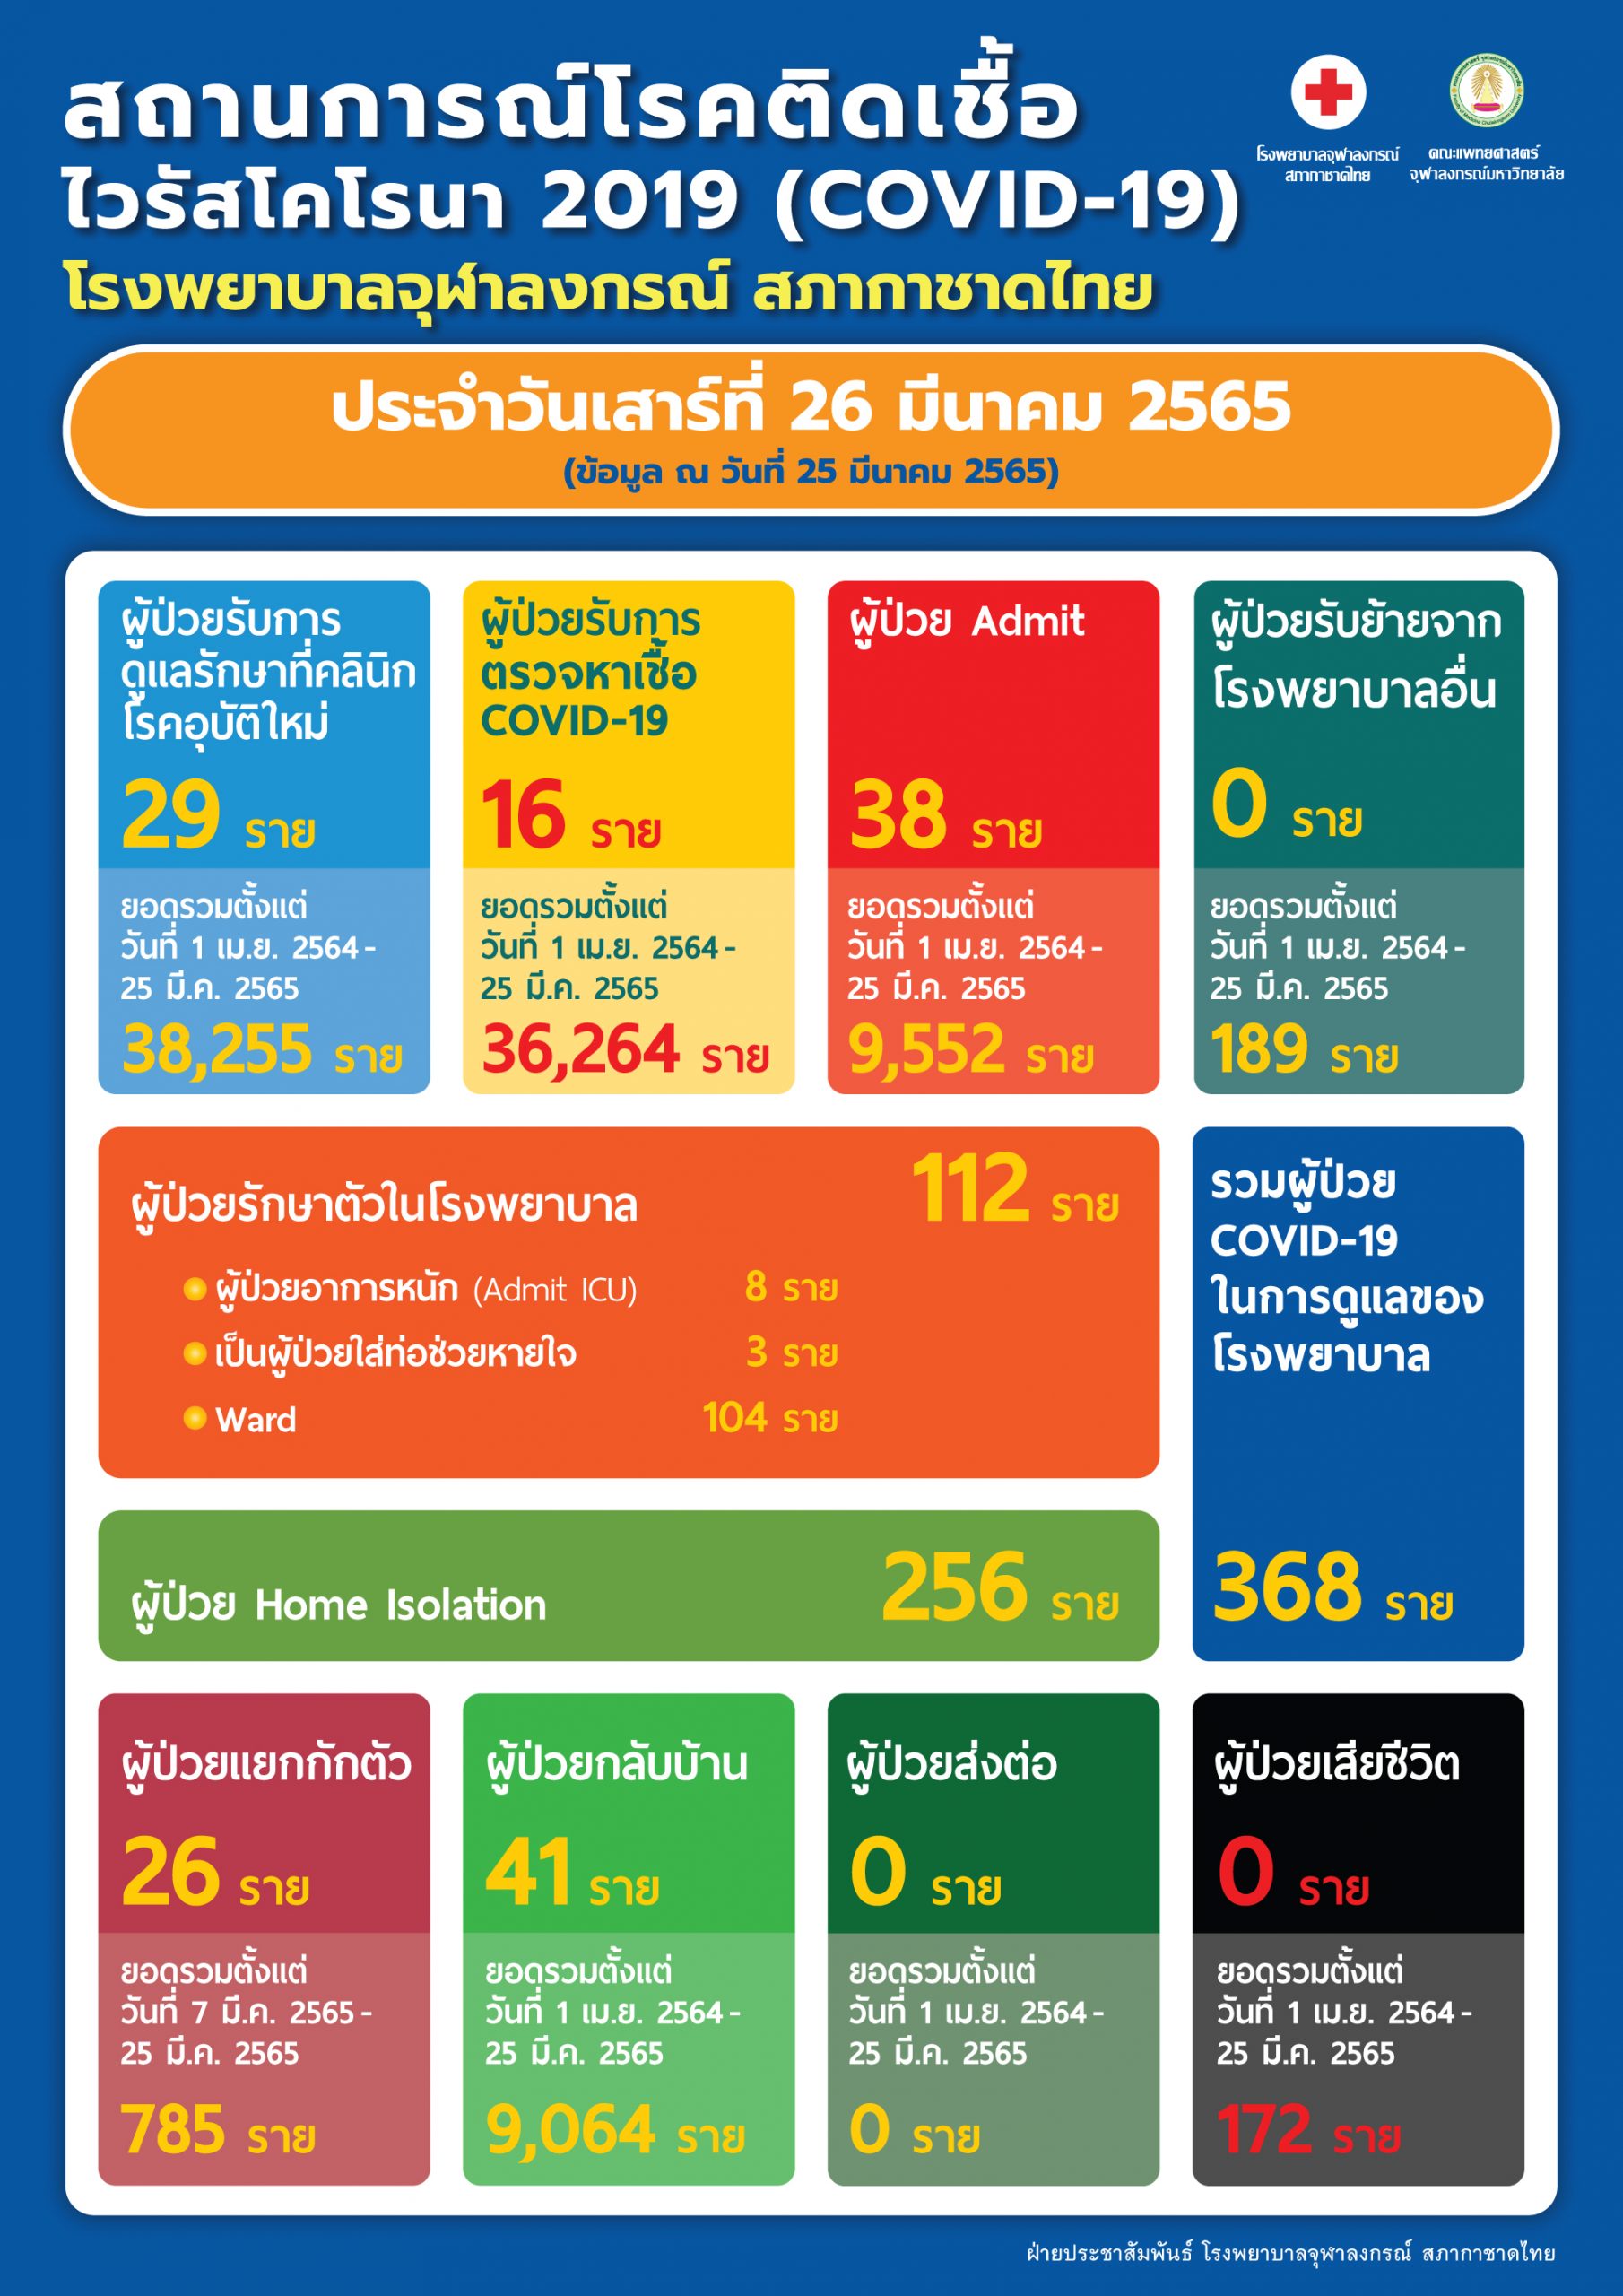 สถานการณ์โรคติดเชื้อไวรัสโคโรนา 2019 (COVID-19) โรงพยาบาลจุฬาลงกรณ์ สภากาชาดไทย ประจำวันเสาร์ที่ 26 มีนาคม 2565